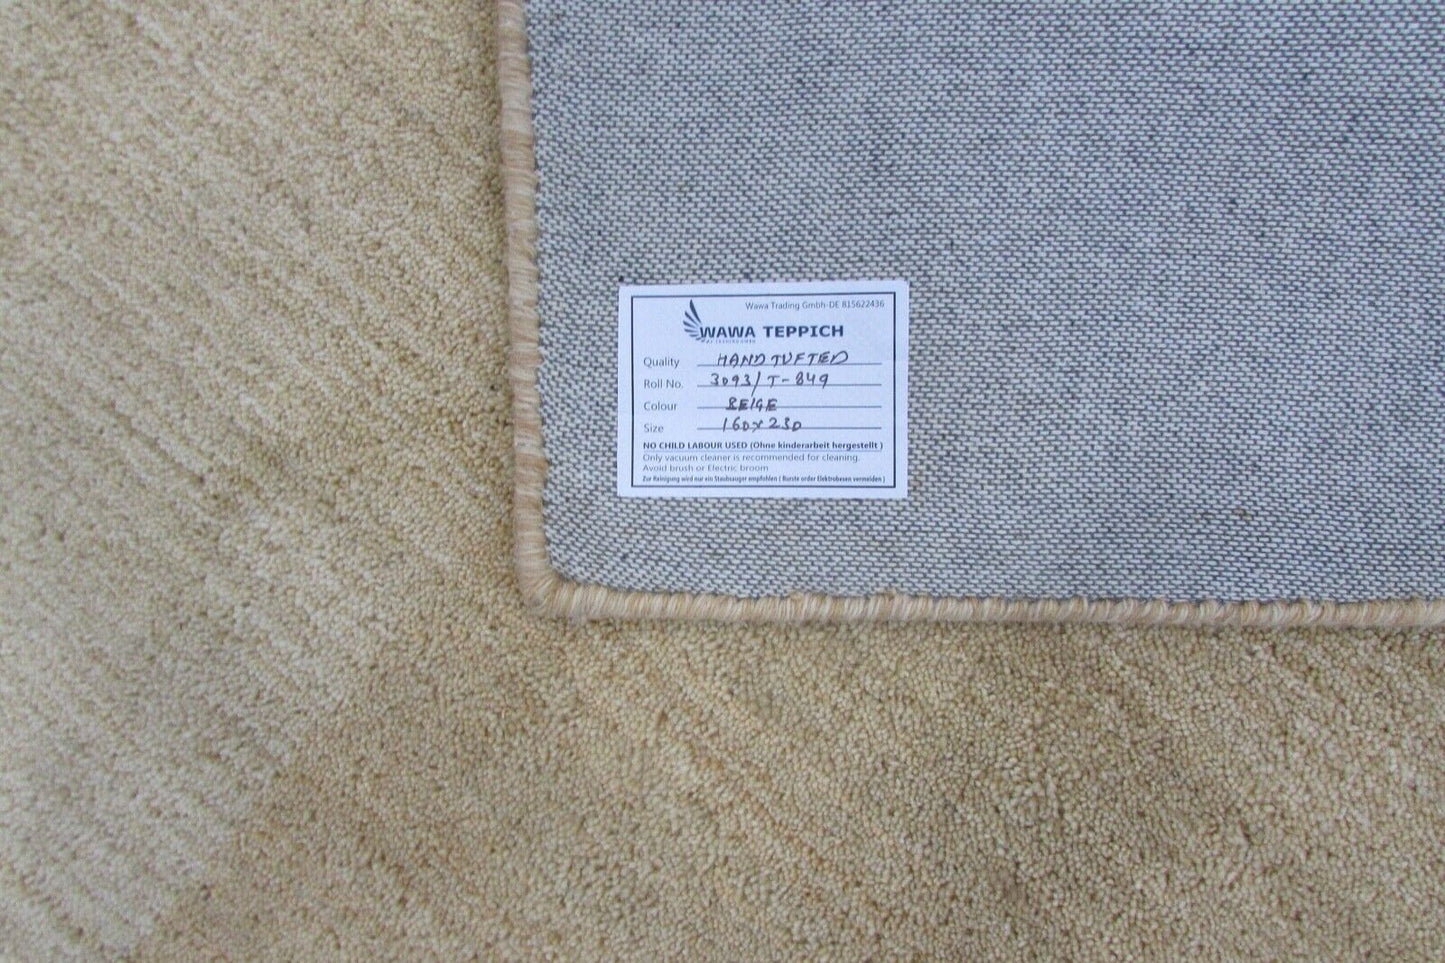 Wolle Teppich  Beige 160X230 cm Handarbeit 100% Wolle  Handgetuftet T849